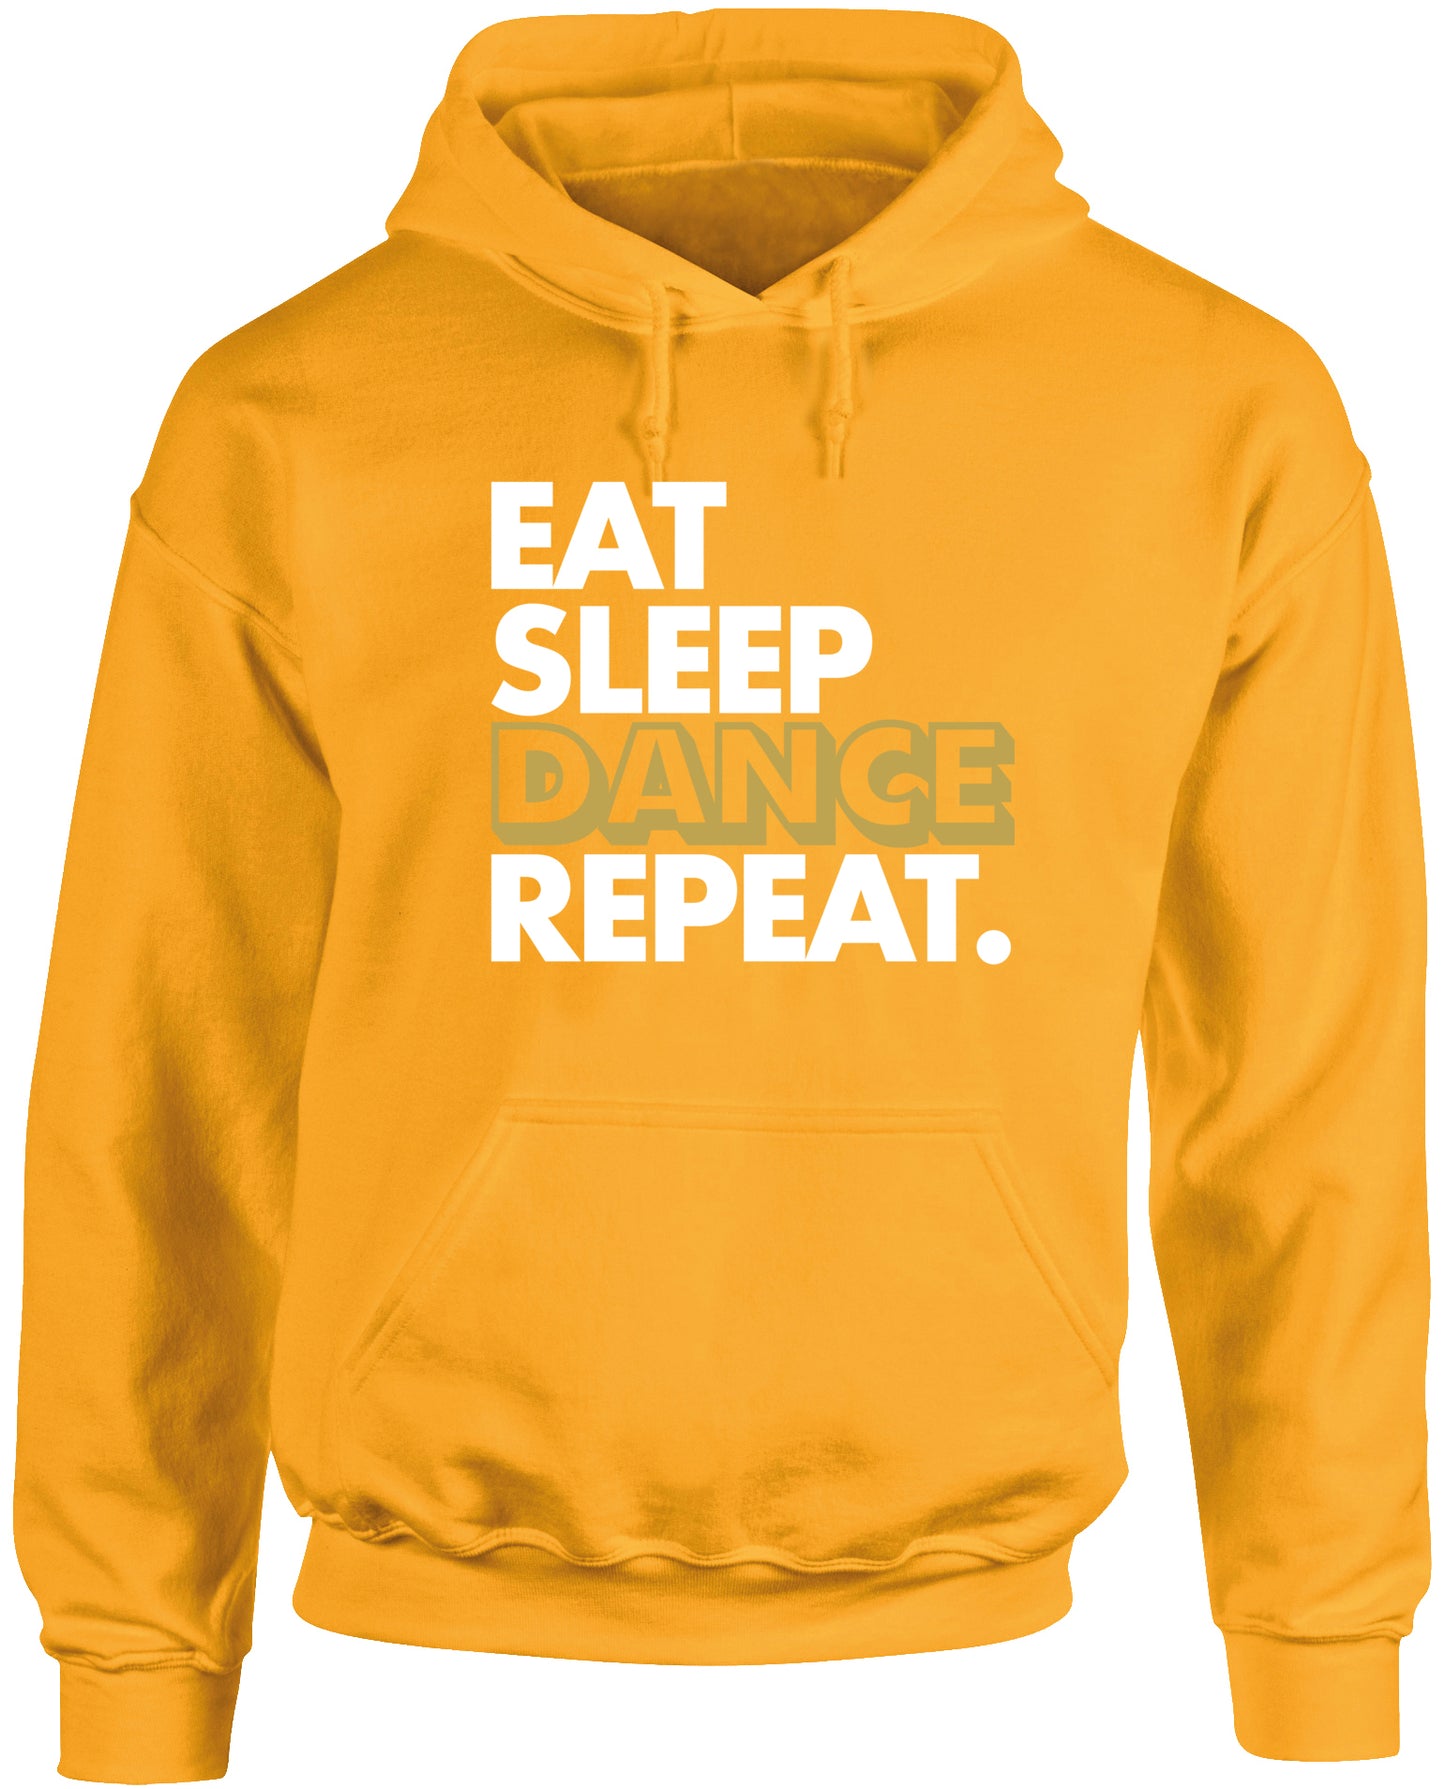 Eat Sleep Dance Repeat unisex Hoodie hooded top